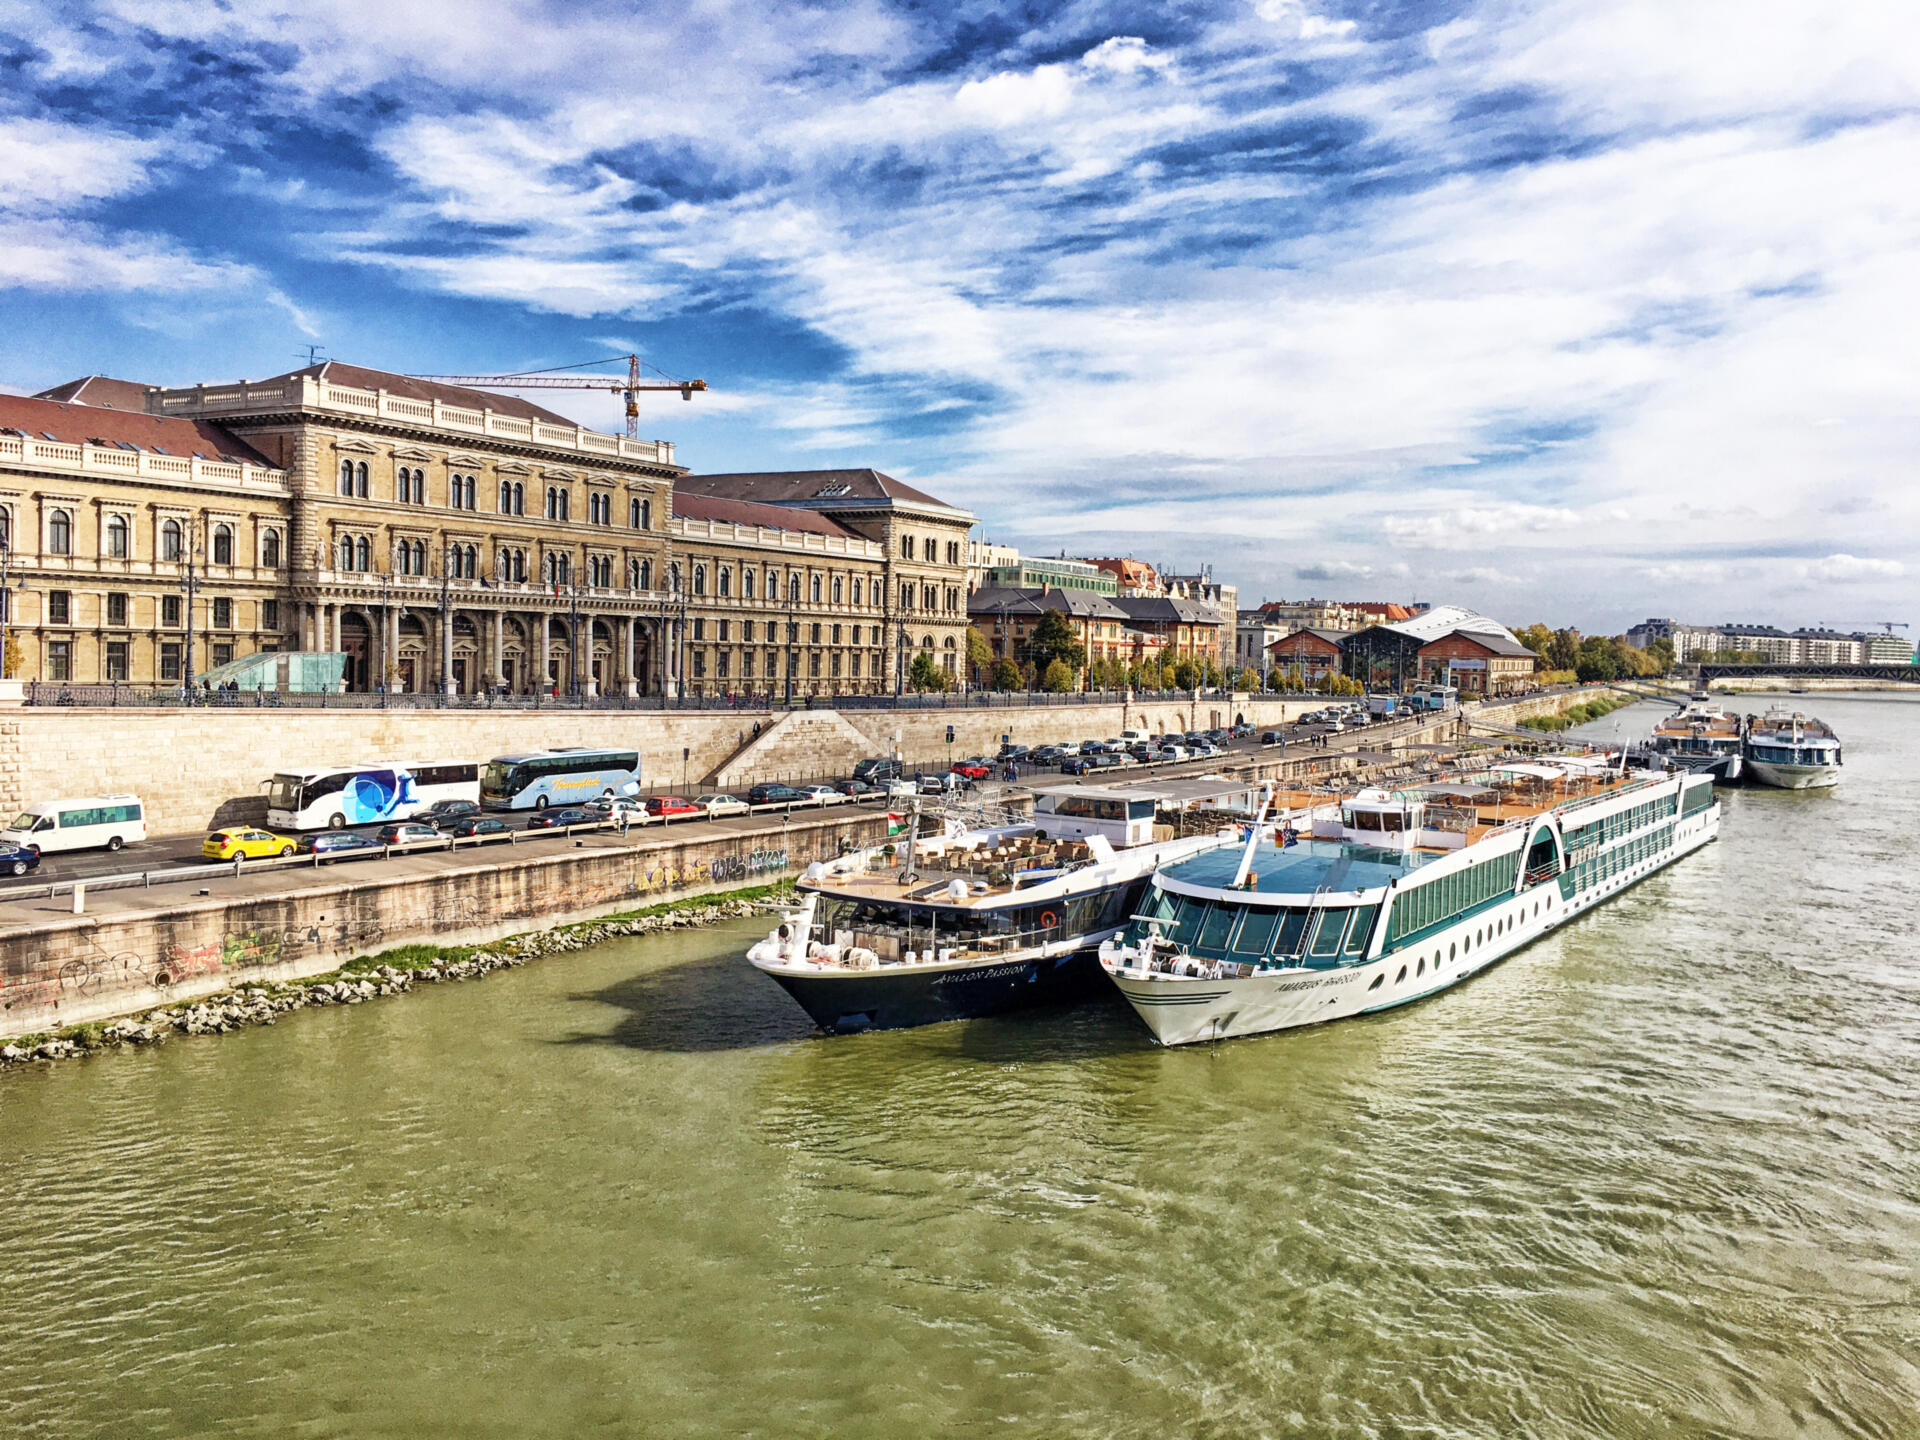 Die Donau ist mit 2857km der längste und gleichzeitig wichtigste Strom Europas. Auf ihrem Weg zwischen Deutschland und dem Schwarzen Meer verbindet sie sage und schreibe 10 Anrainerstaaten und ist Lebensader und Verkehrsweg gleichermaßen.